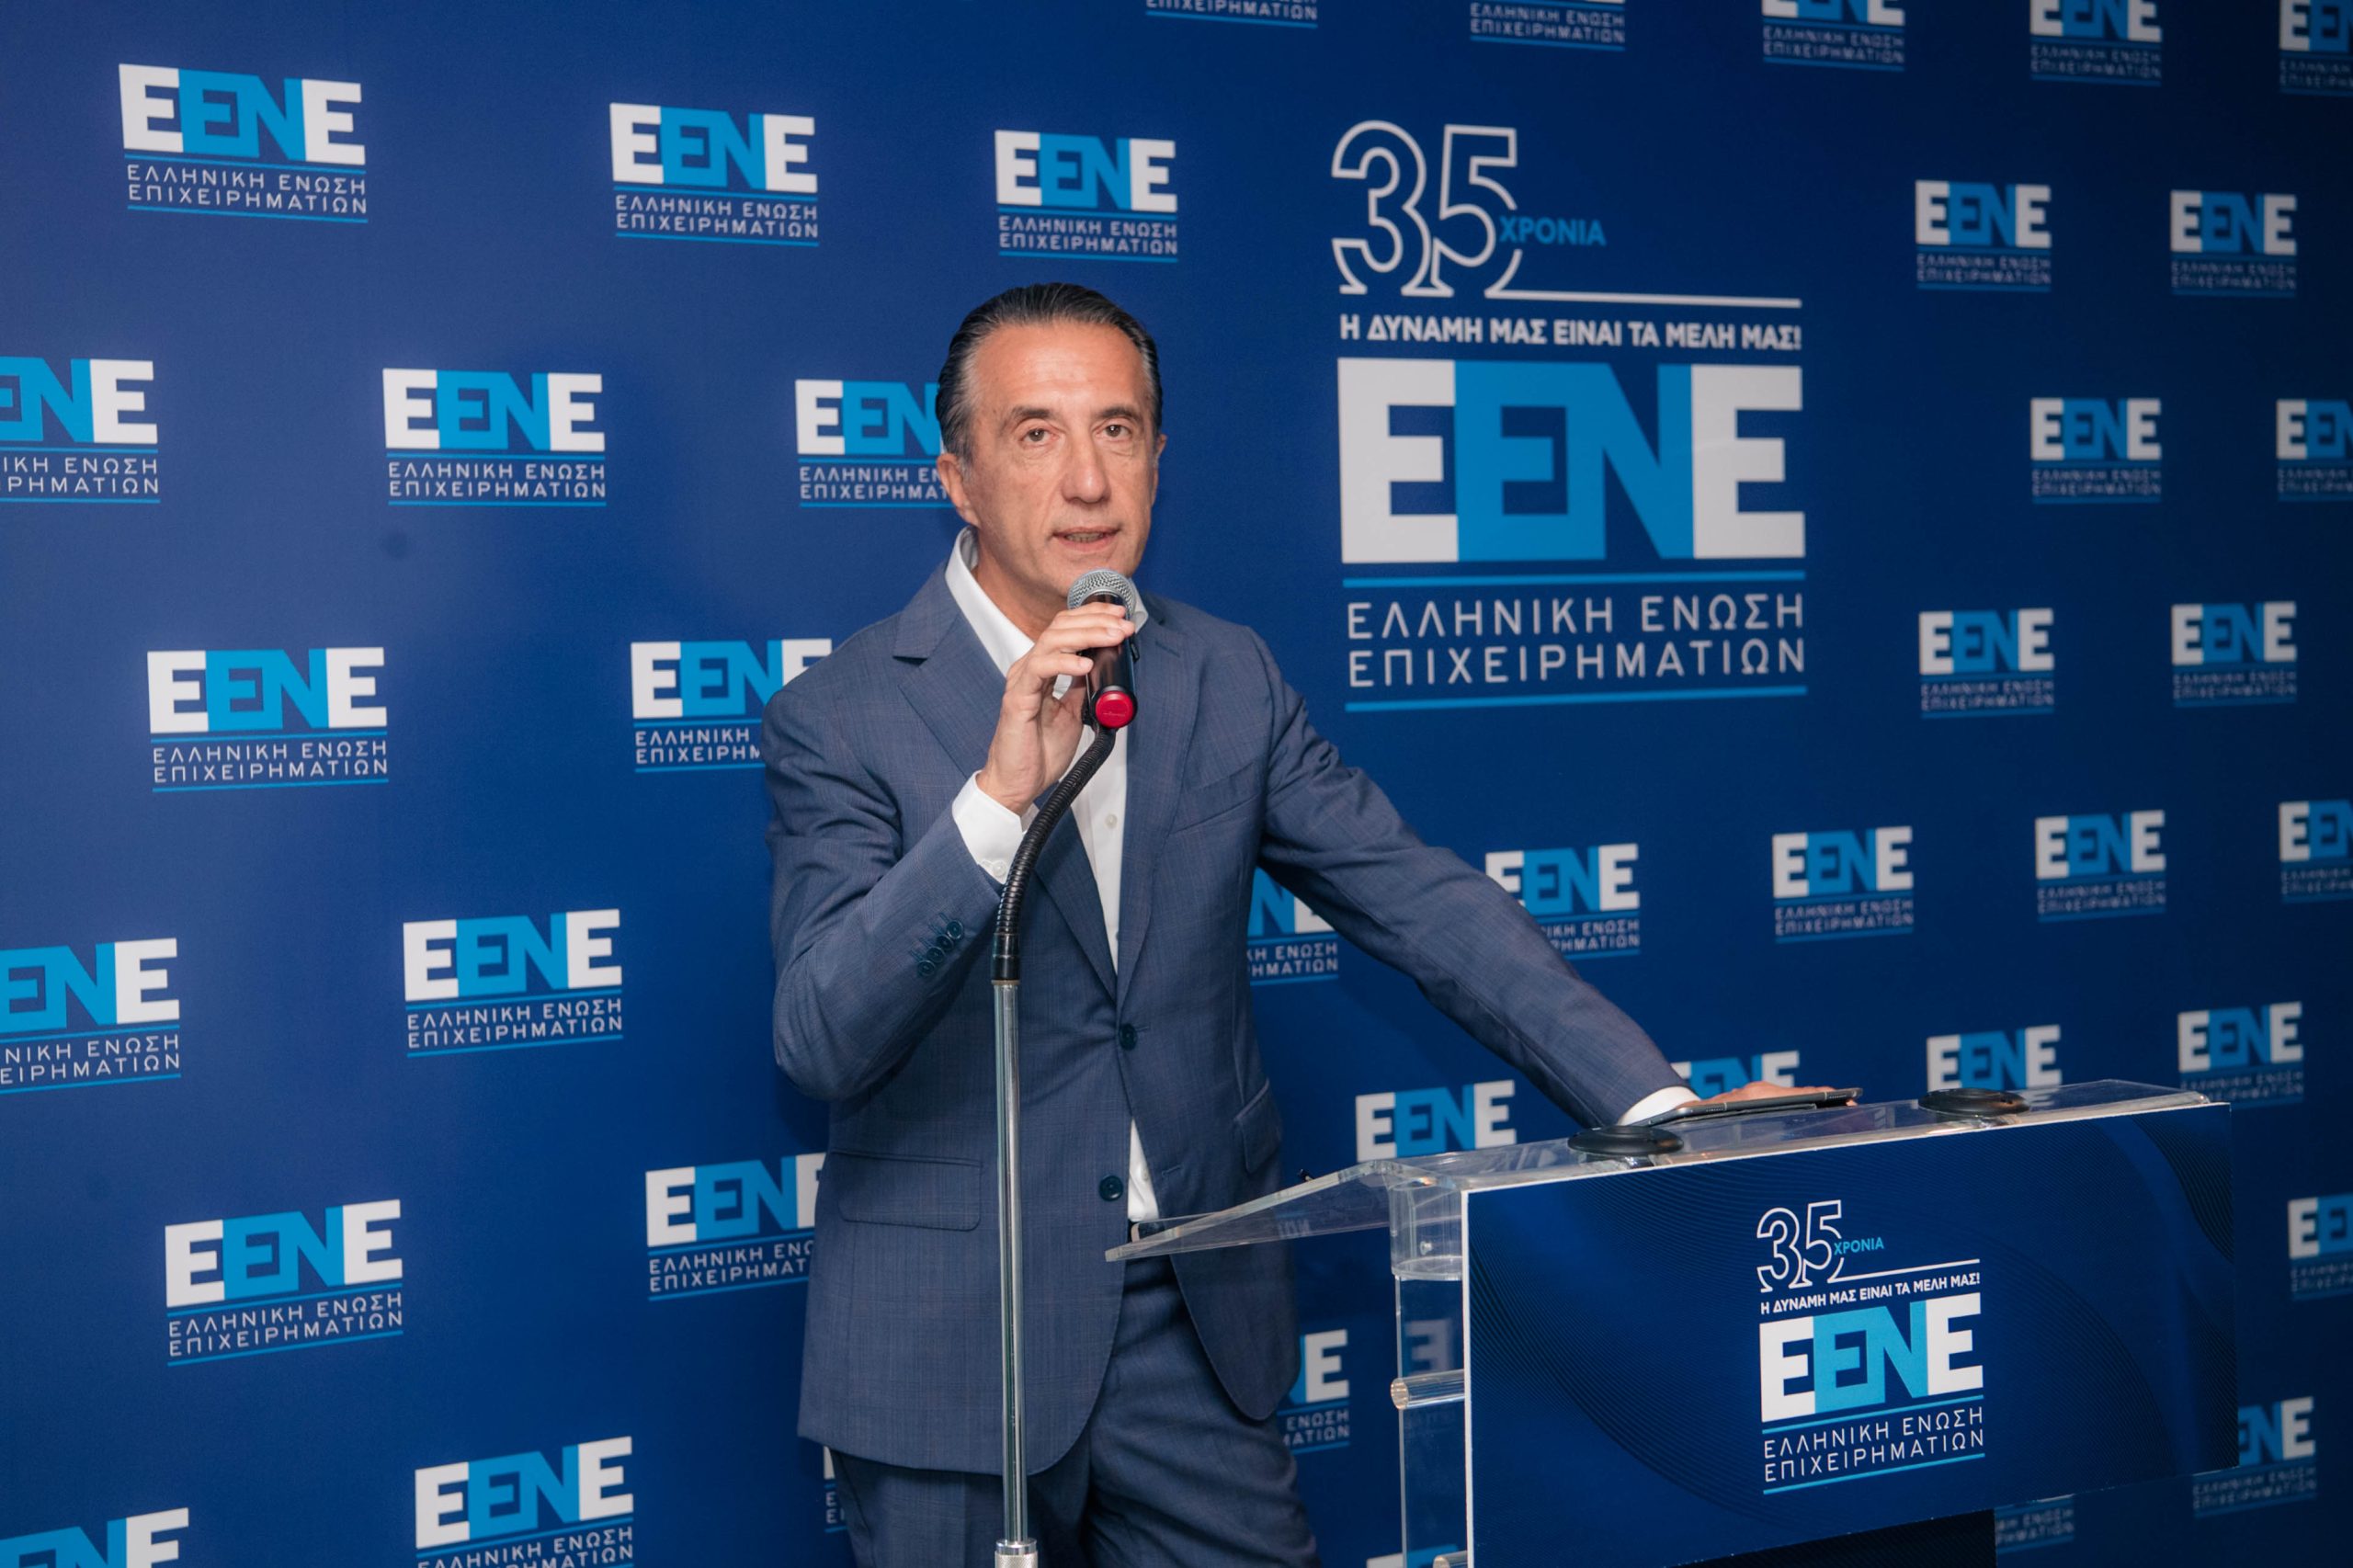 Νέος πρόεδρος στην Ελληνική Ένωση Επιχειρηματιών (Ε.ΕΝ.Ε) ο Κρίστιαν Χατζημηνάς